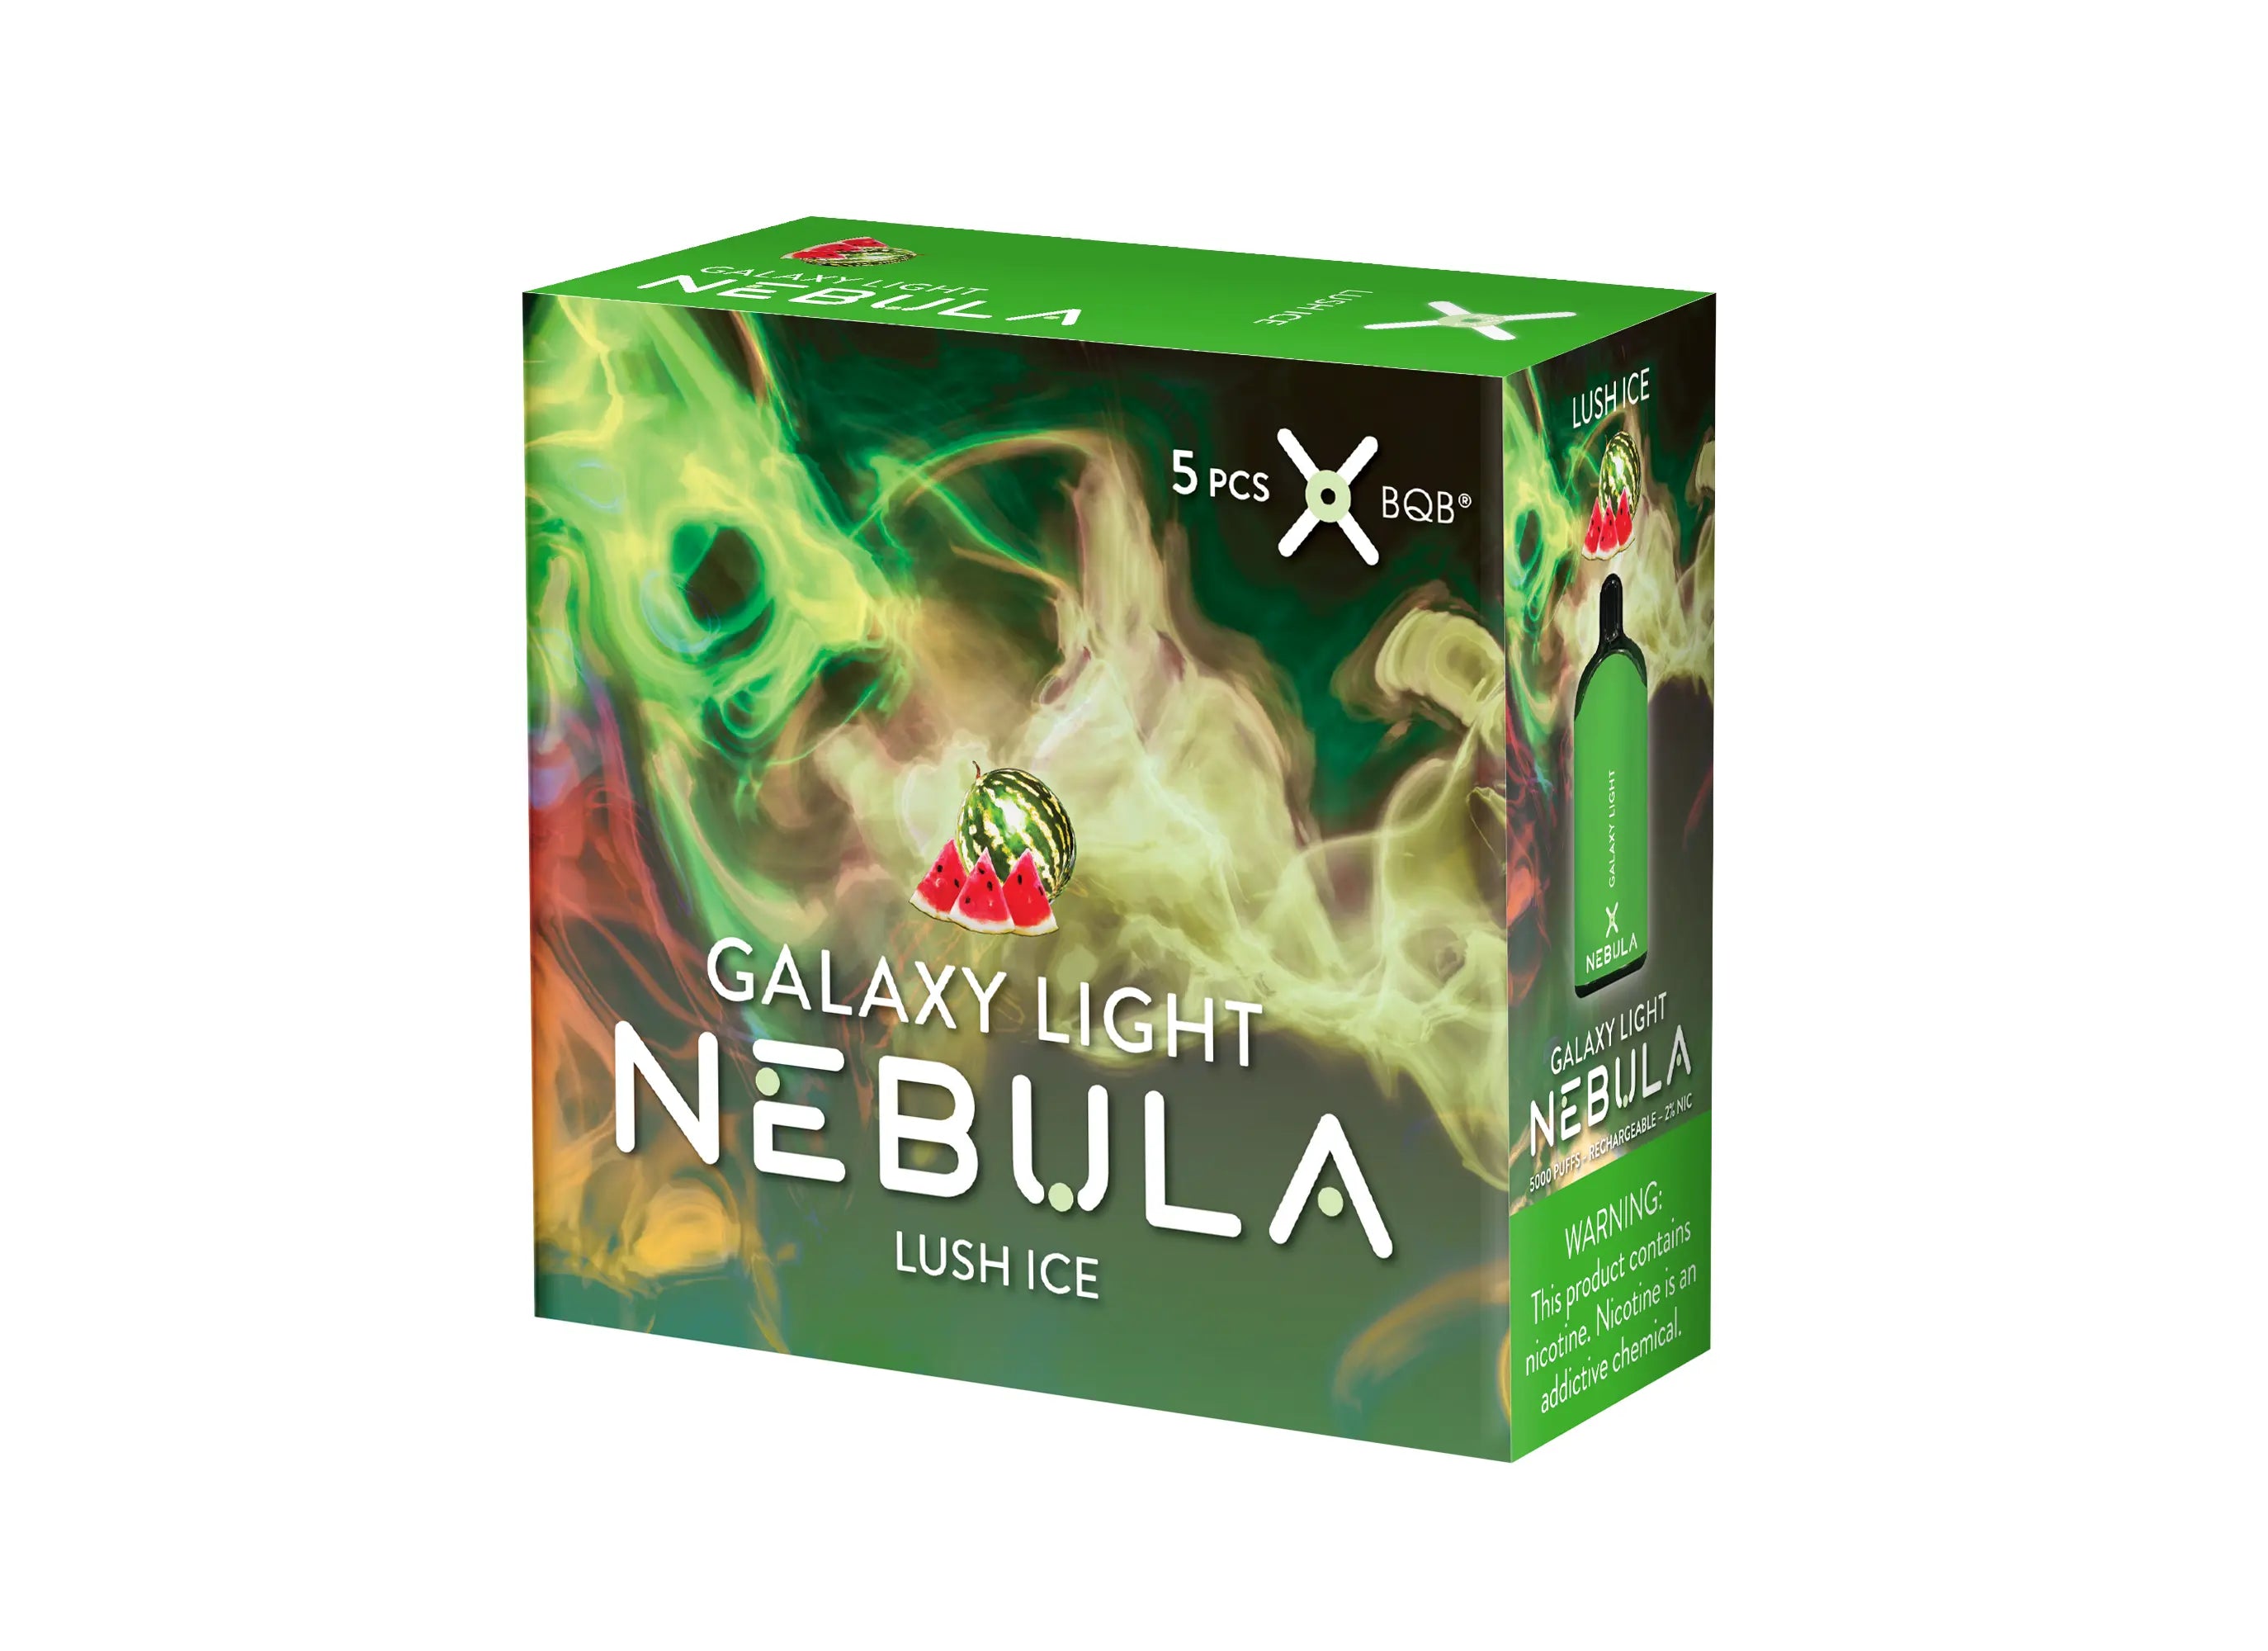 Nebula Galaxy Light 2% 5000 Puffs Vape - Lush Ice - B2B Nebula